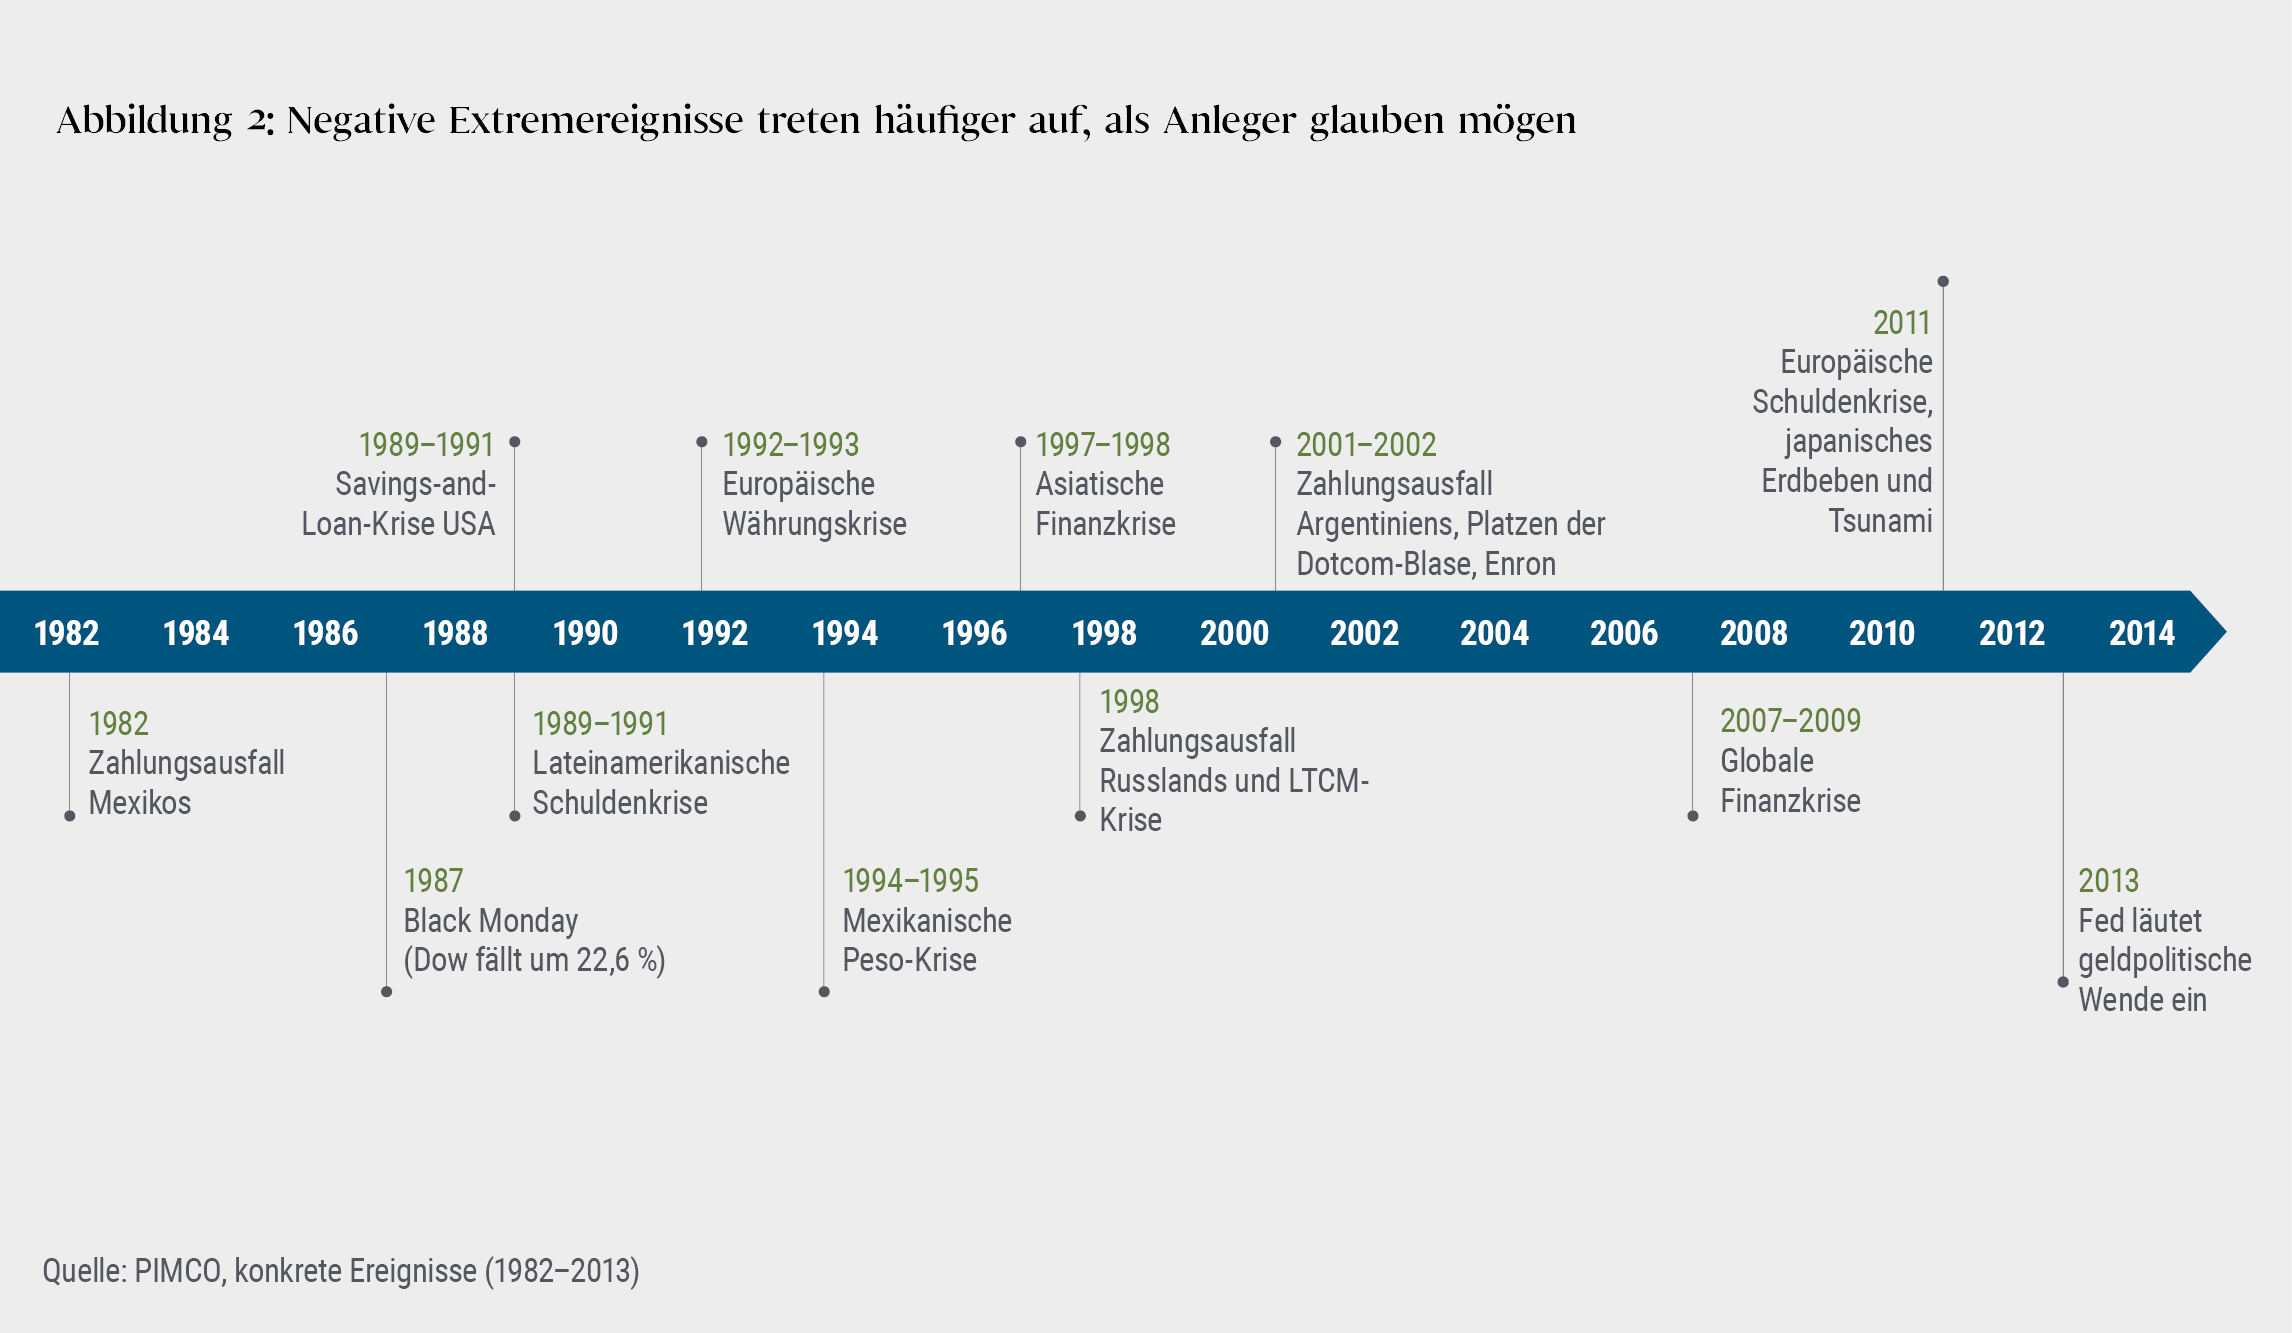 Die Grafik zeigt eine Zeitleiste von 1982 bis 2014 und stellt globale Marktereignisse heraus, die Extremrisiken entstehen lassen können.